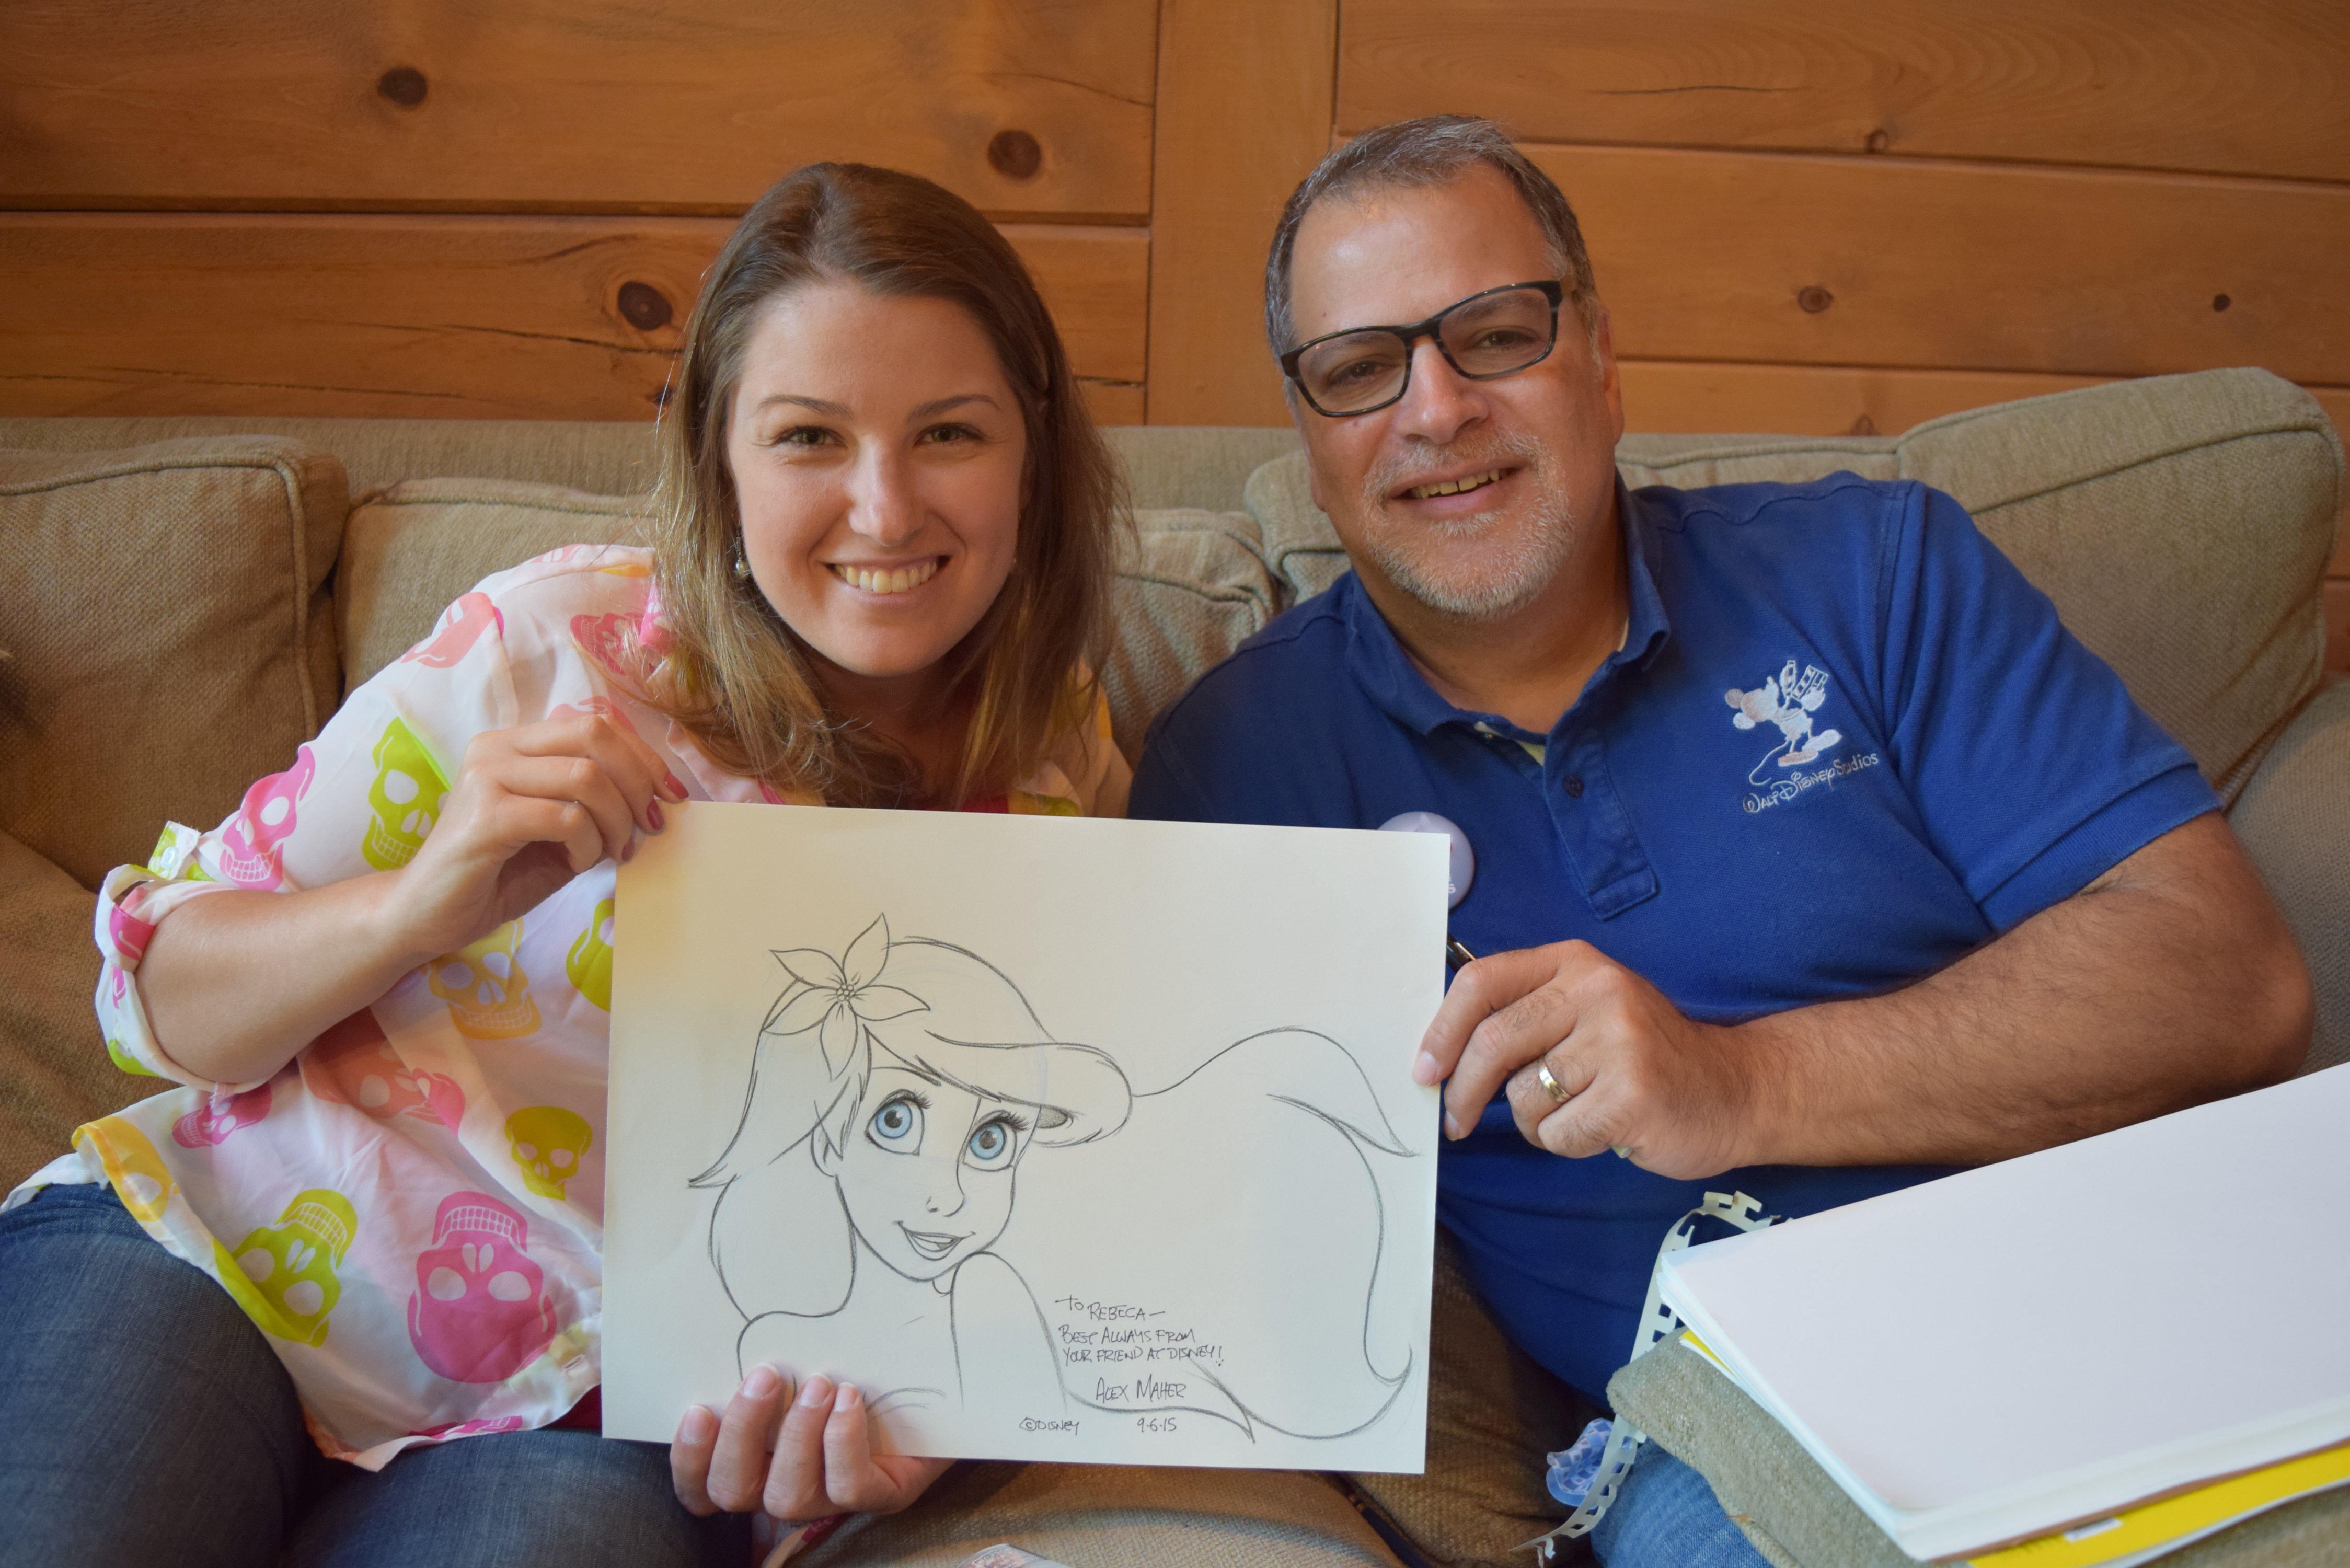 Nesta viagem tivemos a companhia do Alex Maher, desenhista da Disney, que fez, carinhosamente, um desenho para cada integrante do grupo. É uma arte essa minha Ariel!